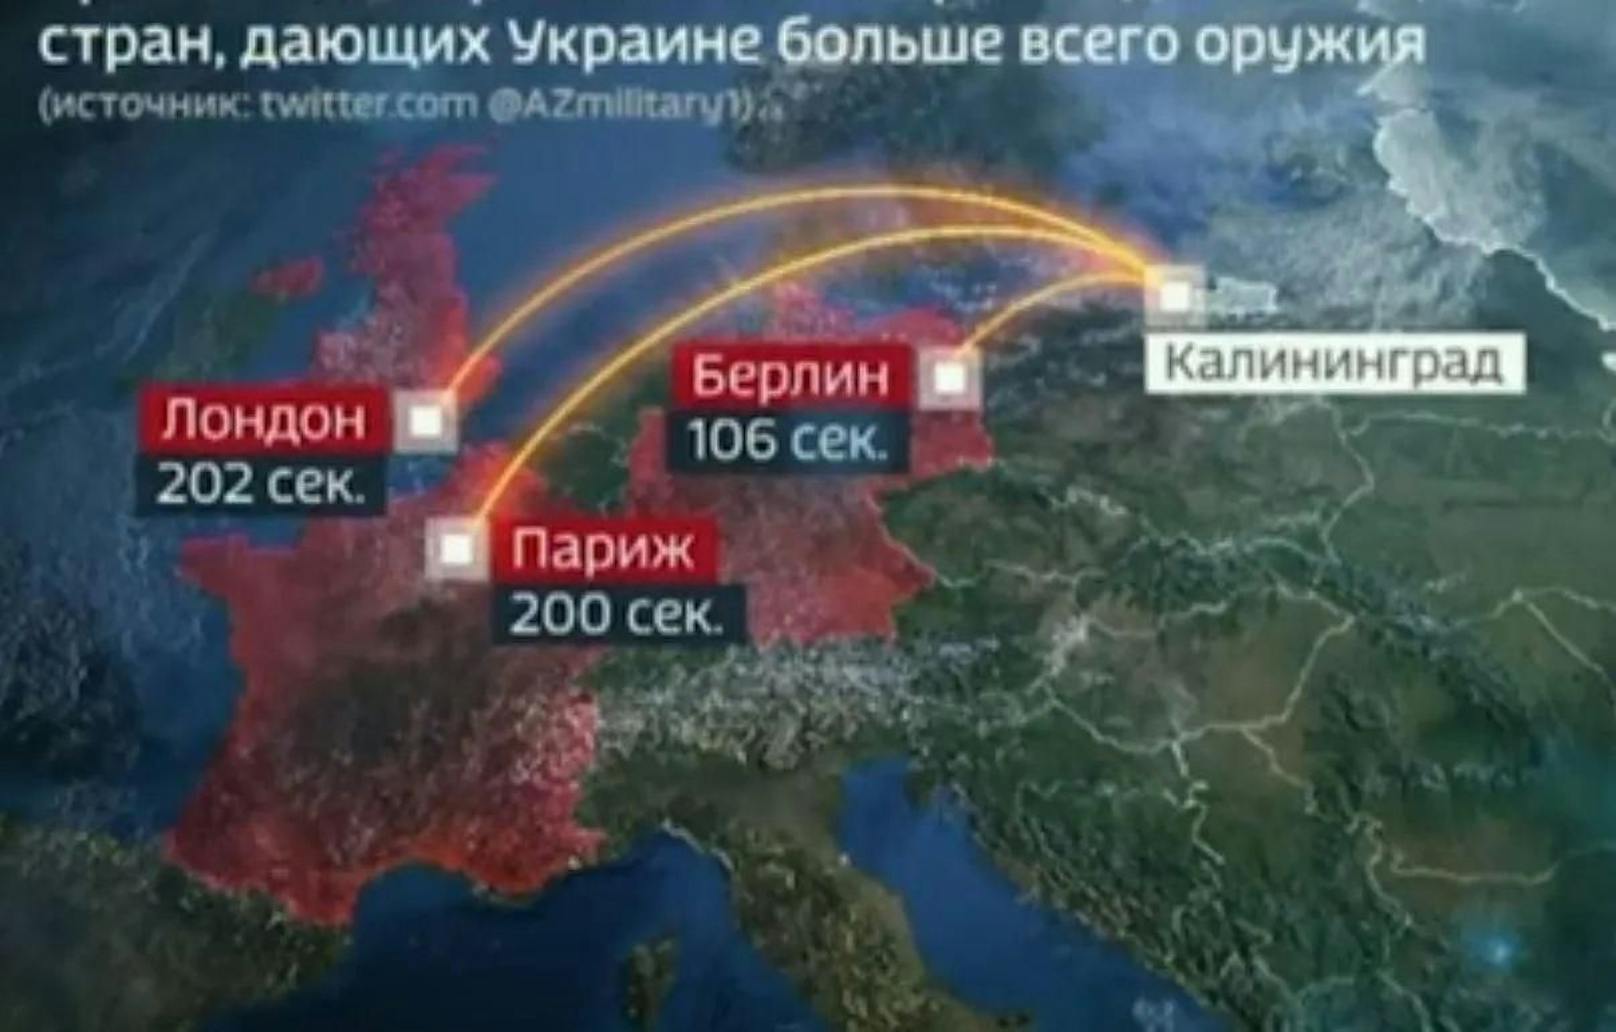 Der russische Sender Rossija 24 zeigte eine Karte mit möglichen russischen Atomschlägen auf drei europäische Hauptstädte. Die Raketen könnten demnach Berlin in 106 Sekunden, Paris in 200 Sekunden und London in 202 Sekunden erreichen. 